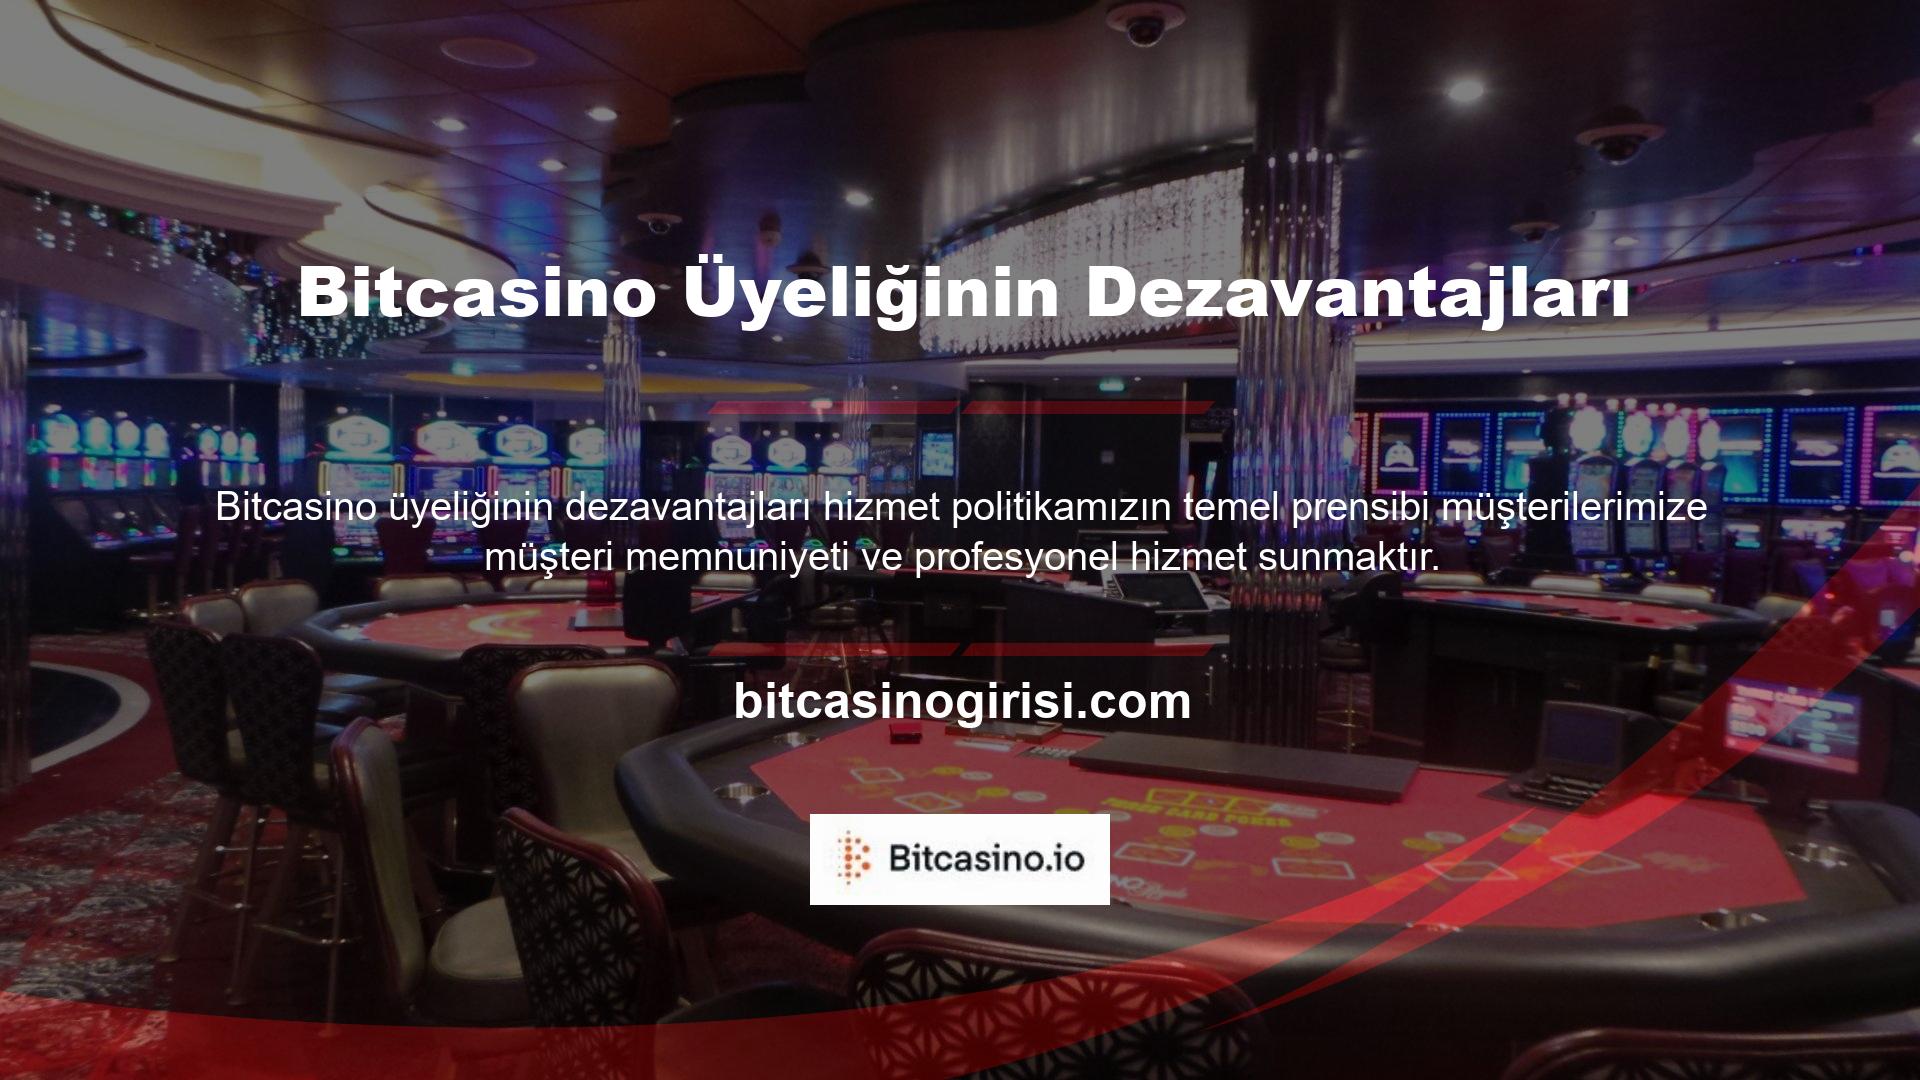 Bitcasino Casino Komisyonu'ndan ve bu konuda hizmet veren web sitelerinden alınan lisans bilgilerine güvenip güvenemeyeceğini sorduk